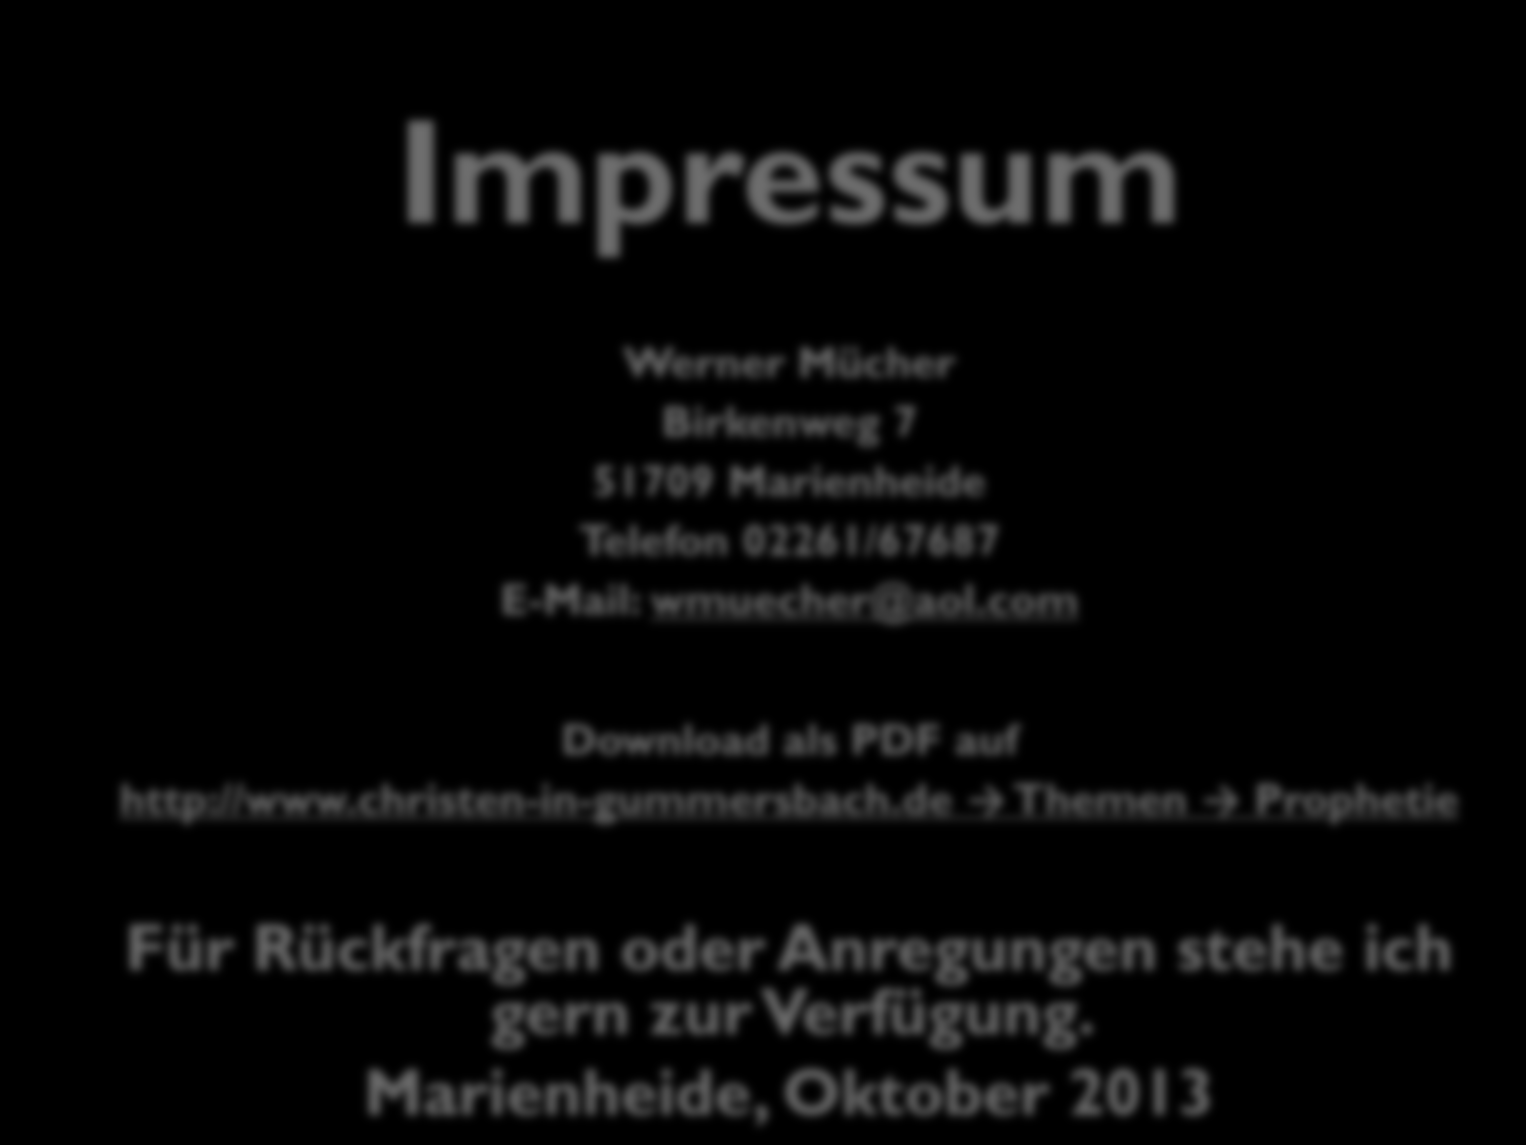 Impressum Werner Mücher Birkenweg 7 51709 Marienheide Telefon 02261/67687 E-Mail: wmuecher@aol.com Download als PDF auf http://www.